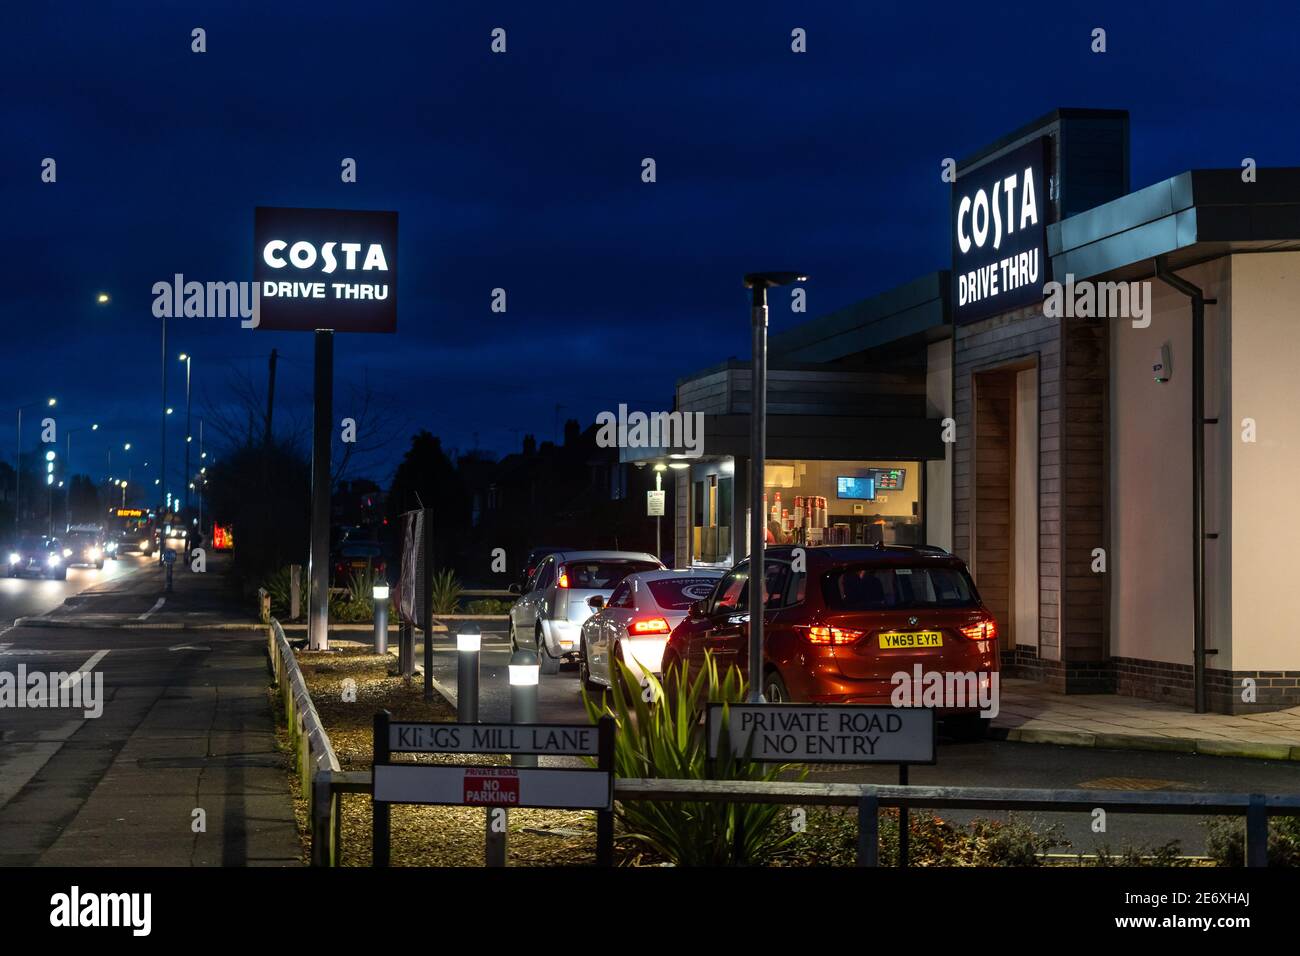 Mansfield Costa coffee drive attraverso negozio silhouette ripresa notturna con i cartelli illuminati sulle vetture che accodano le finestre di attesa illuminate e. negozio aperto in ritardo Foto Stock